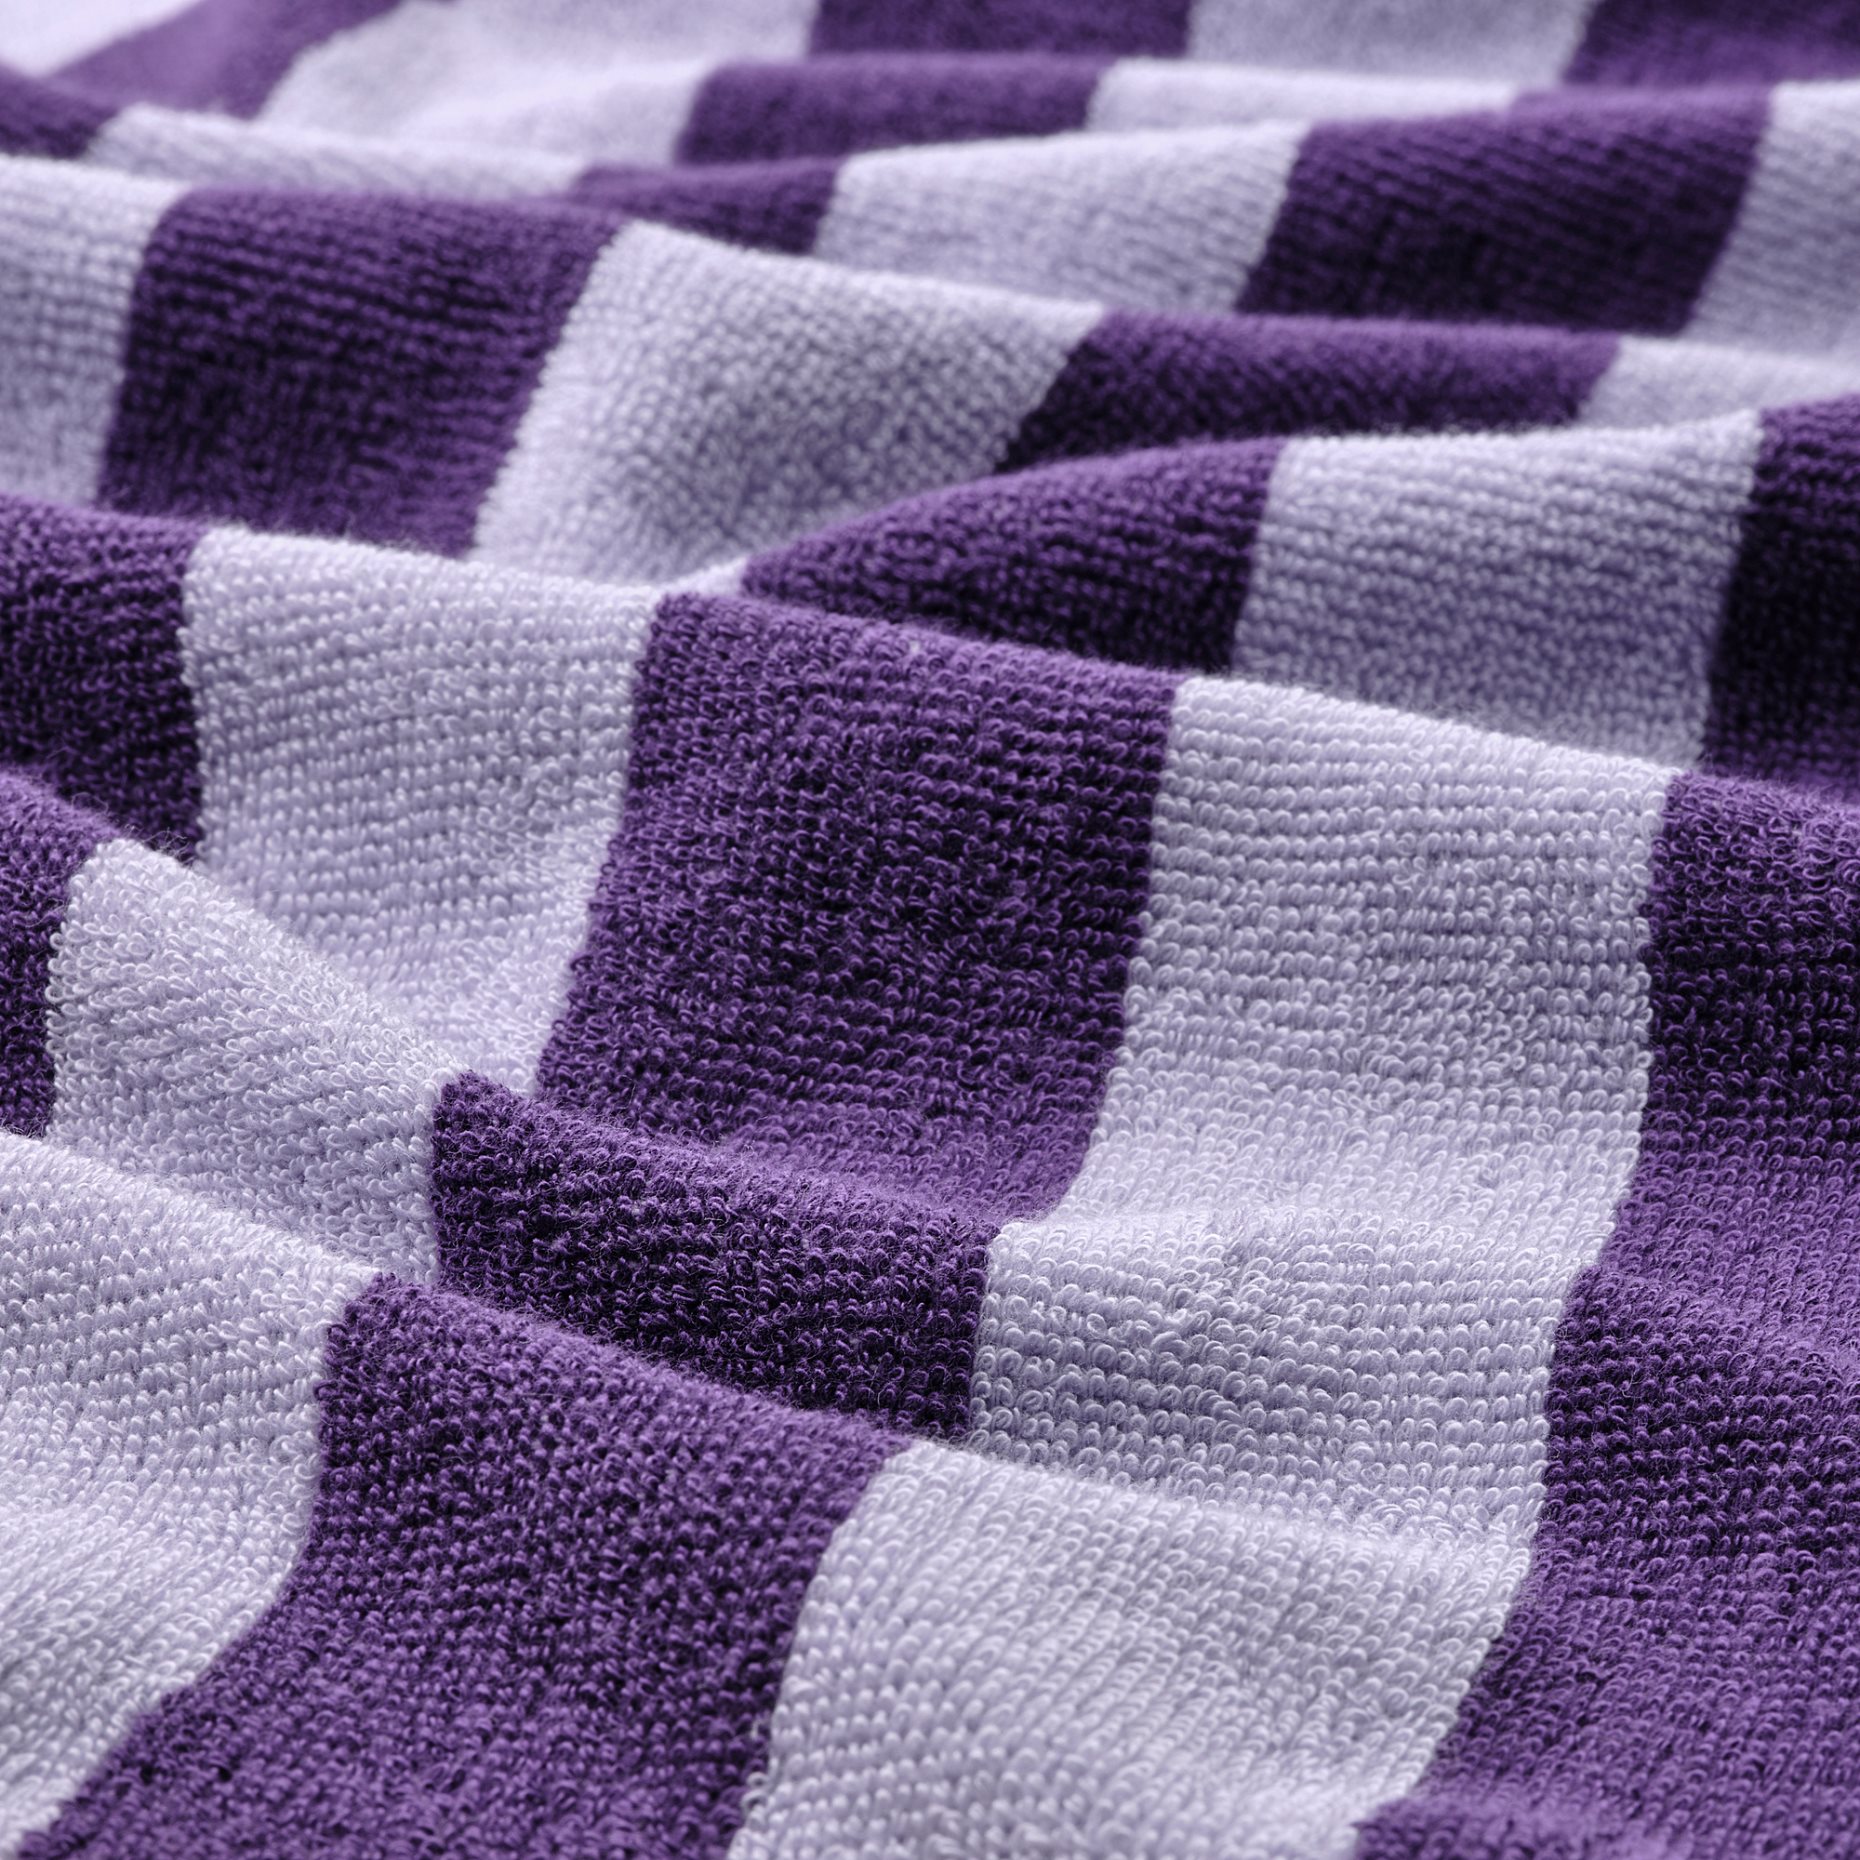 ENSKOTTMAL, hand towel/striped, 40x70 cm, 705.469.31